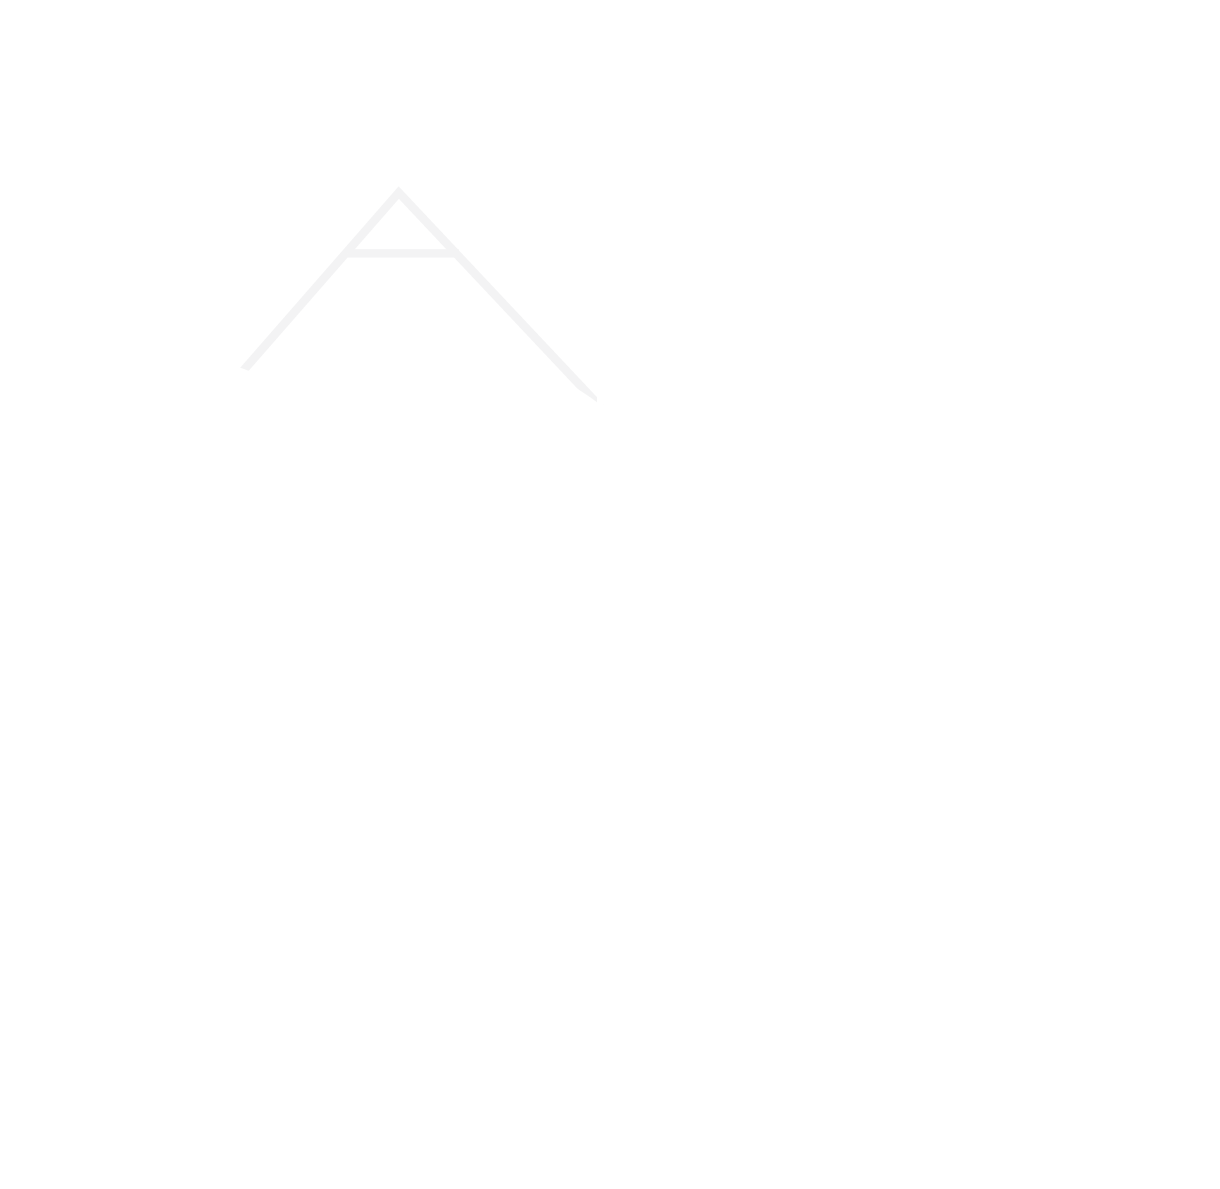 Community LIFT